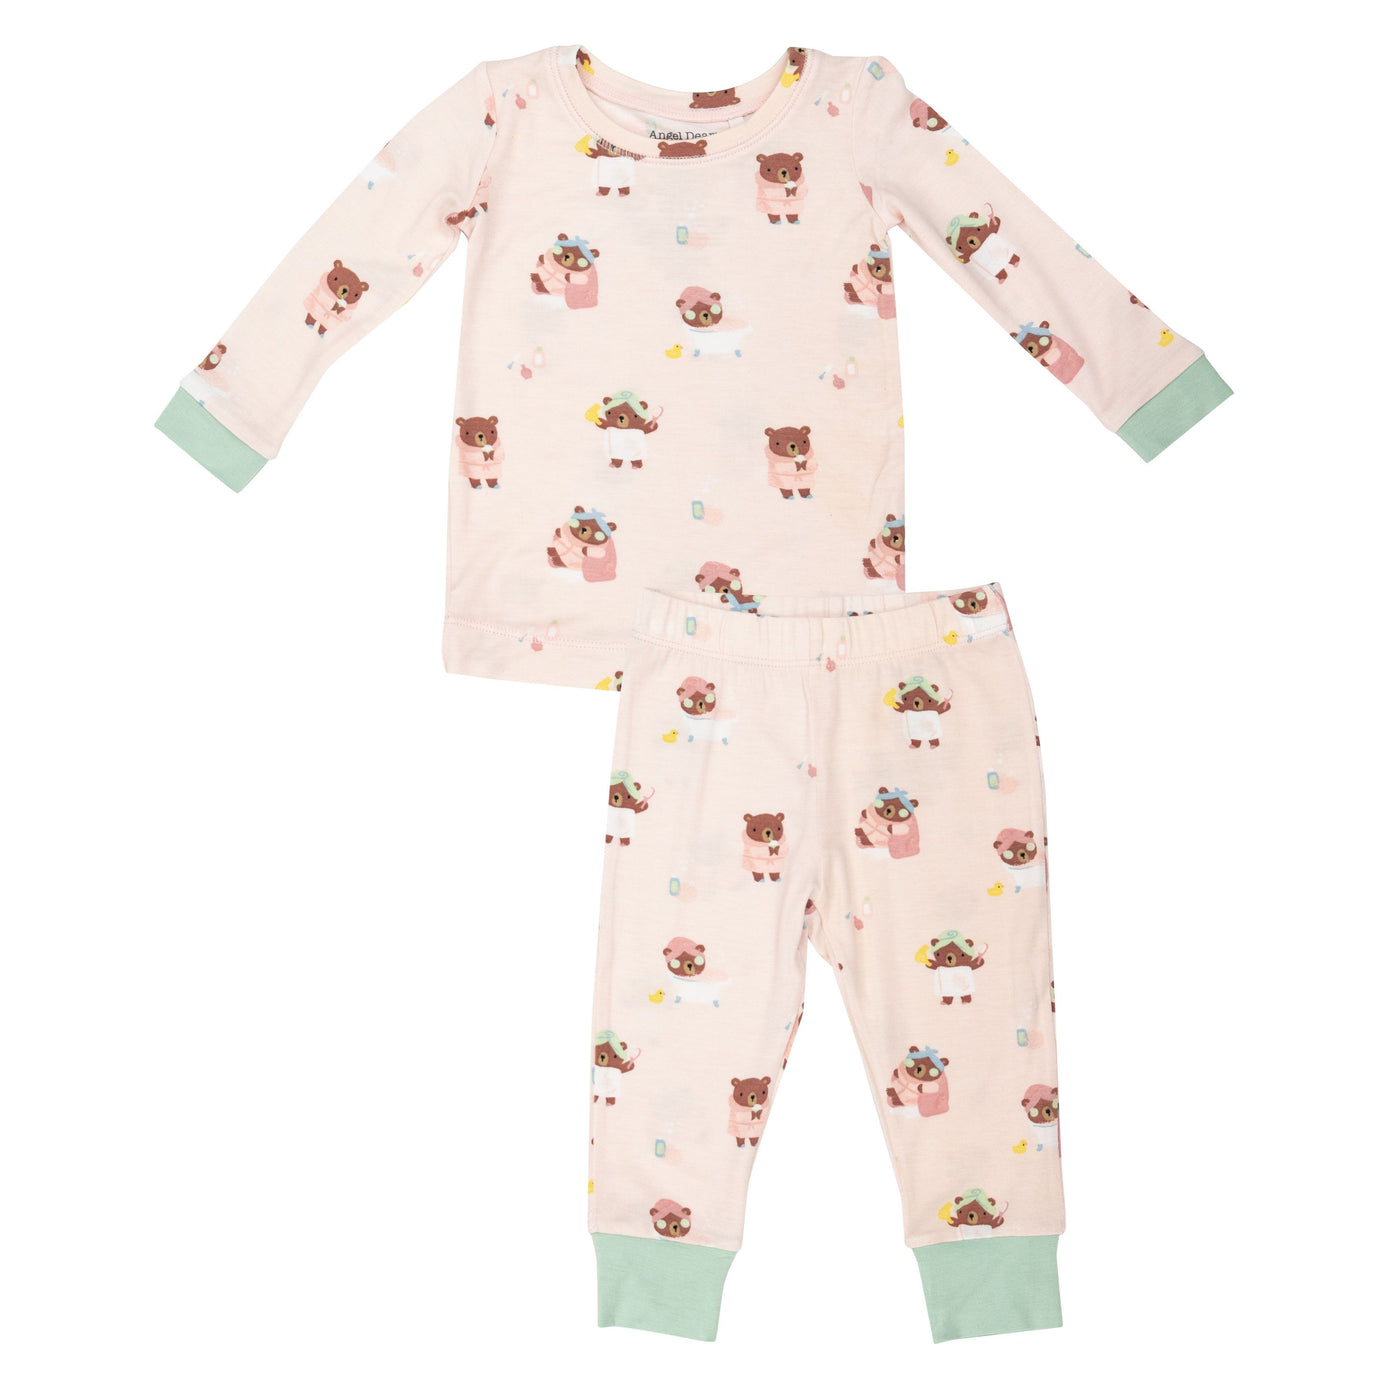 Spa Day Loungewear Set Toddler - Pink - Breckenridge Baby